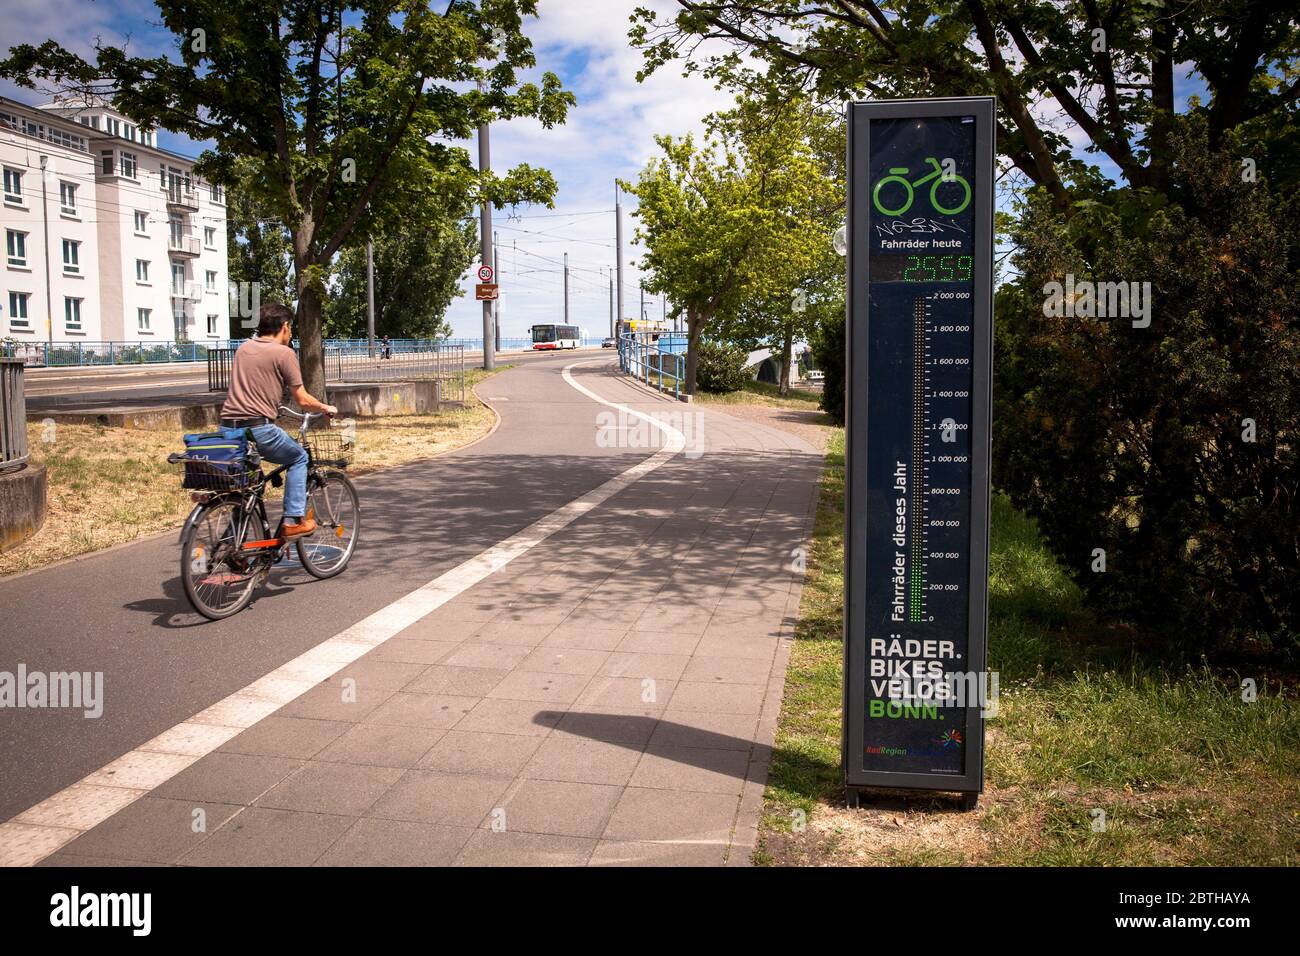 Ein sogenanntes Fahrradbarometer an der Kennedy-Brücke zählt Radfahrer, Bonn, Nordrhein-Westfalen, Deutschland ein sogenanntes Fahrradbarometer an der Ke Stockfoto